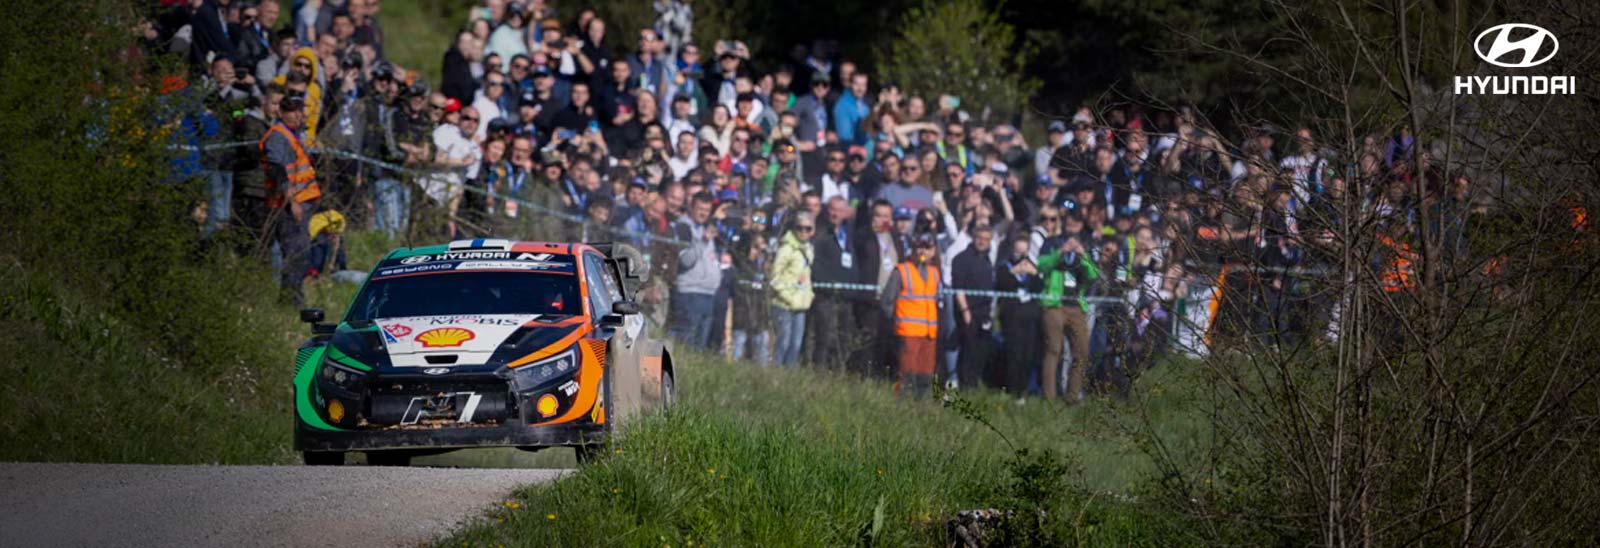 Auto Hyundai en Rally de Croacia rindiendo homenaje a Craig Breen